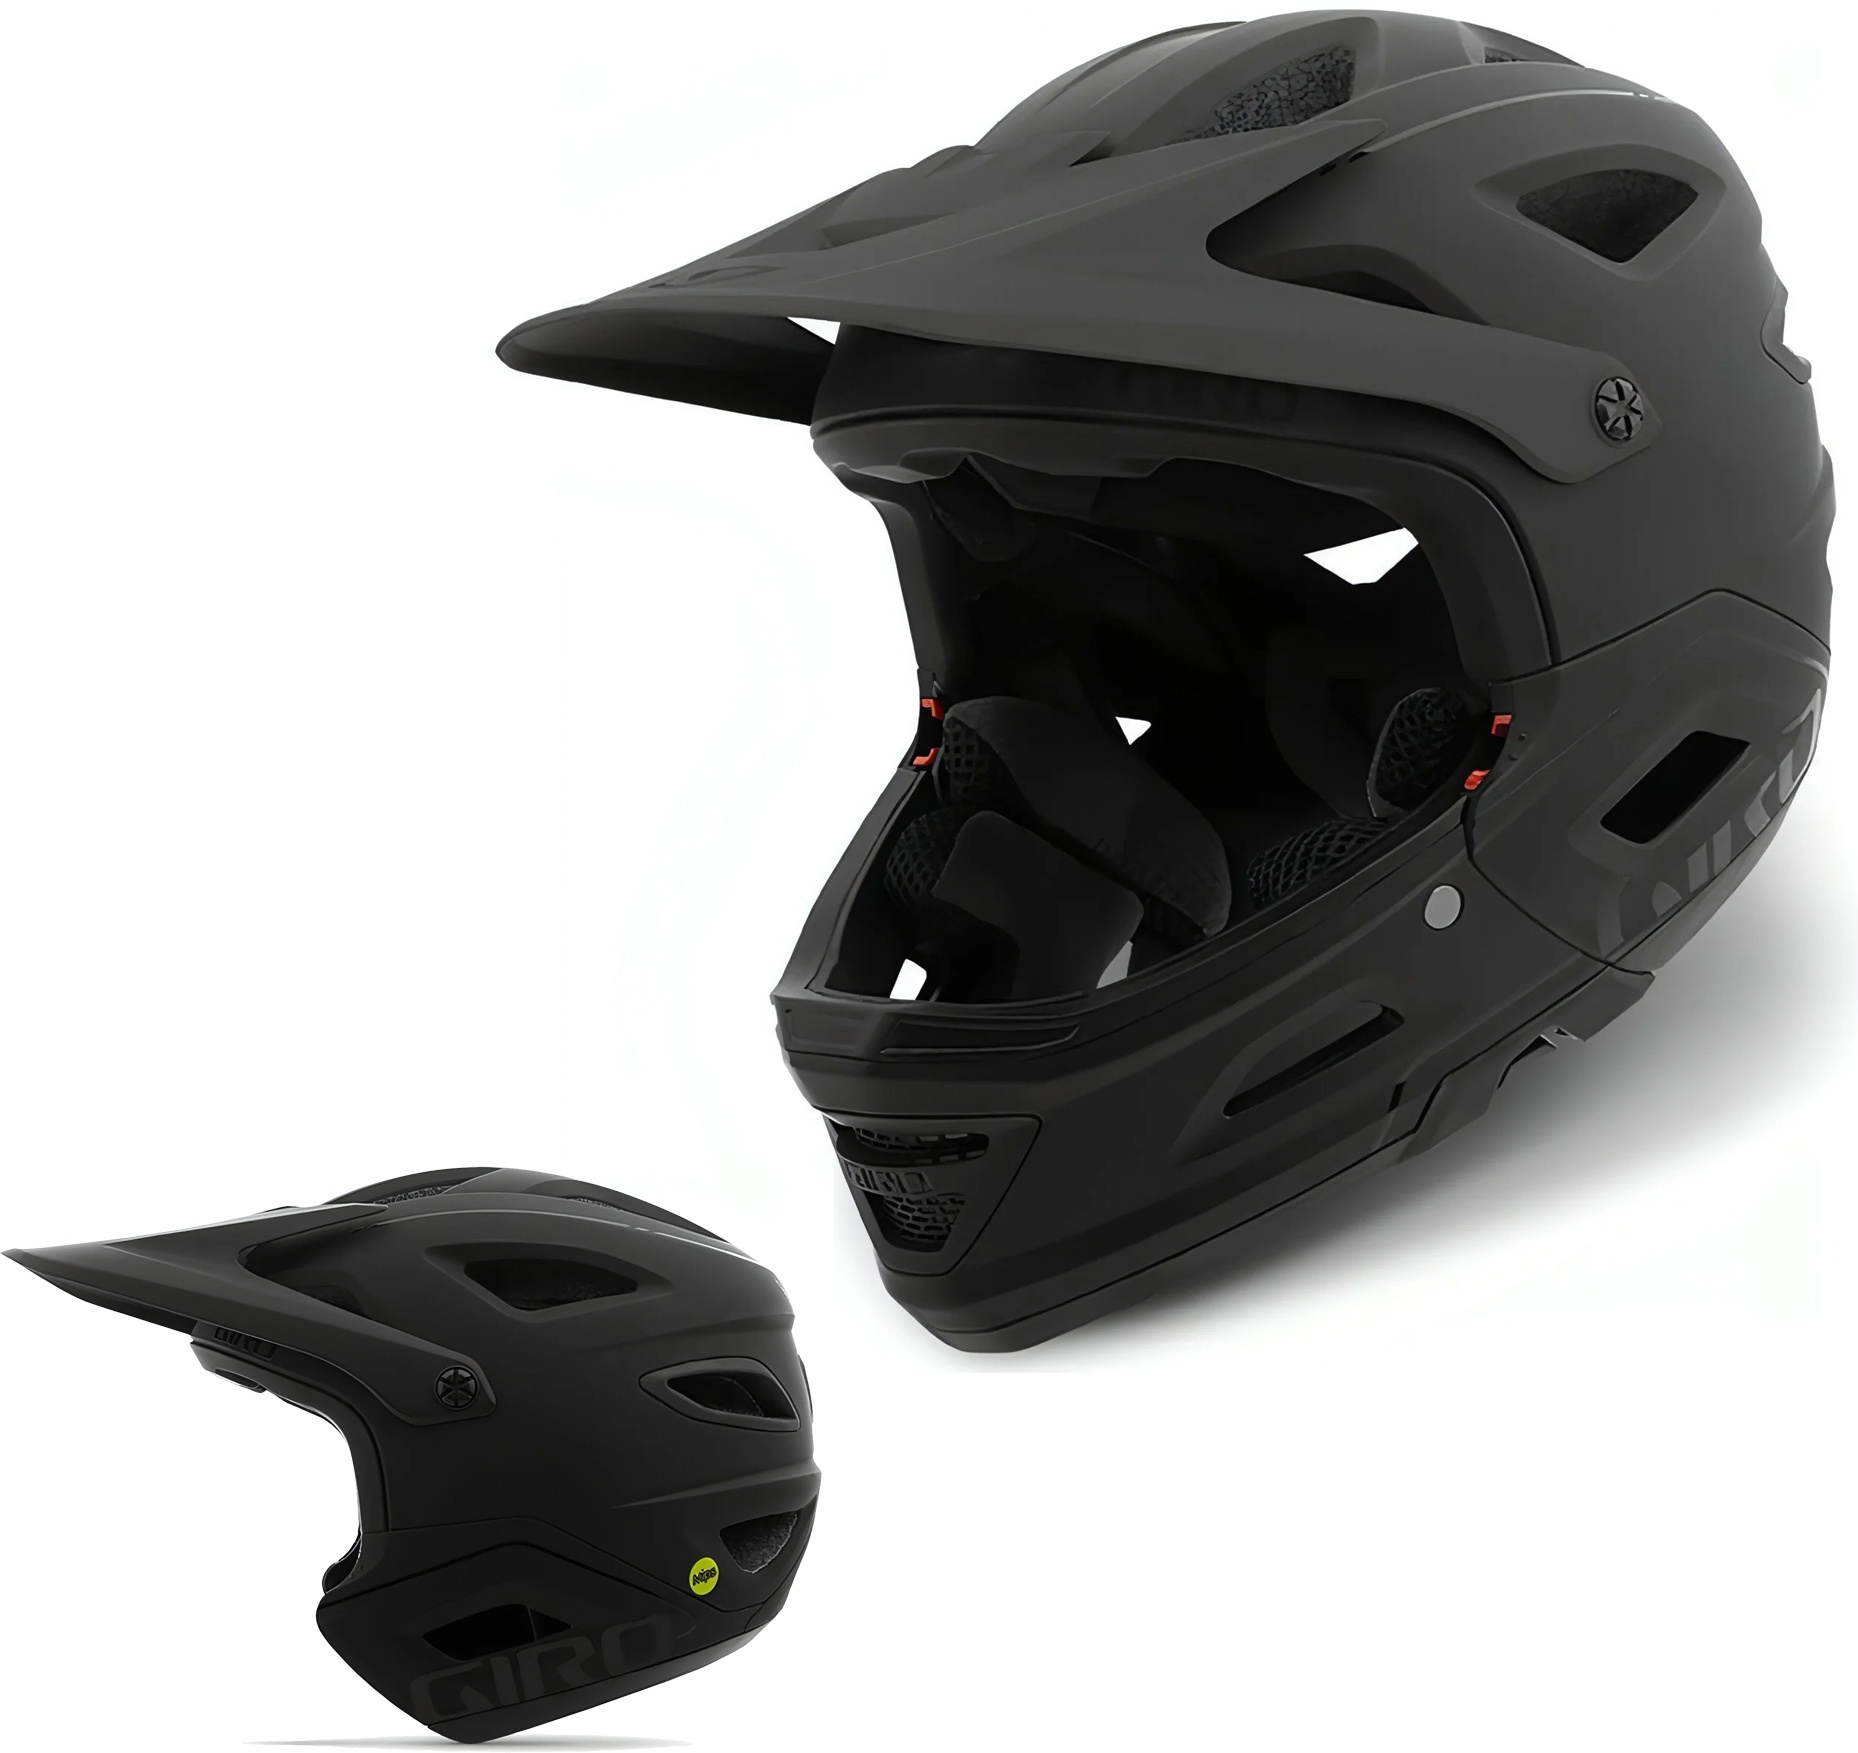 Giro Switchblade Full Face Sort » Helmet Size: M (55cm-59cm)